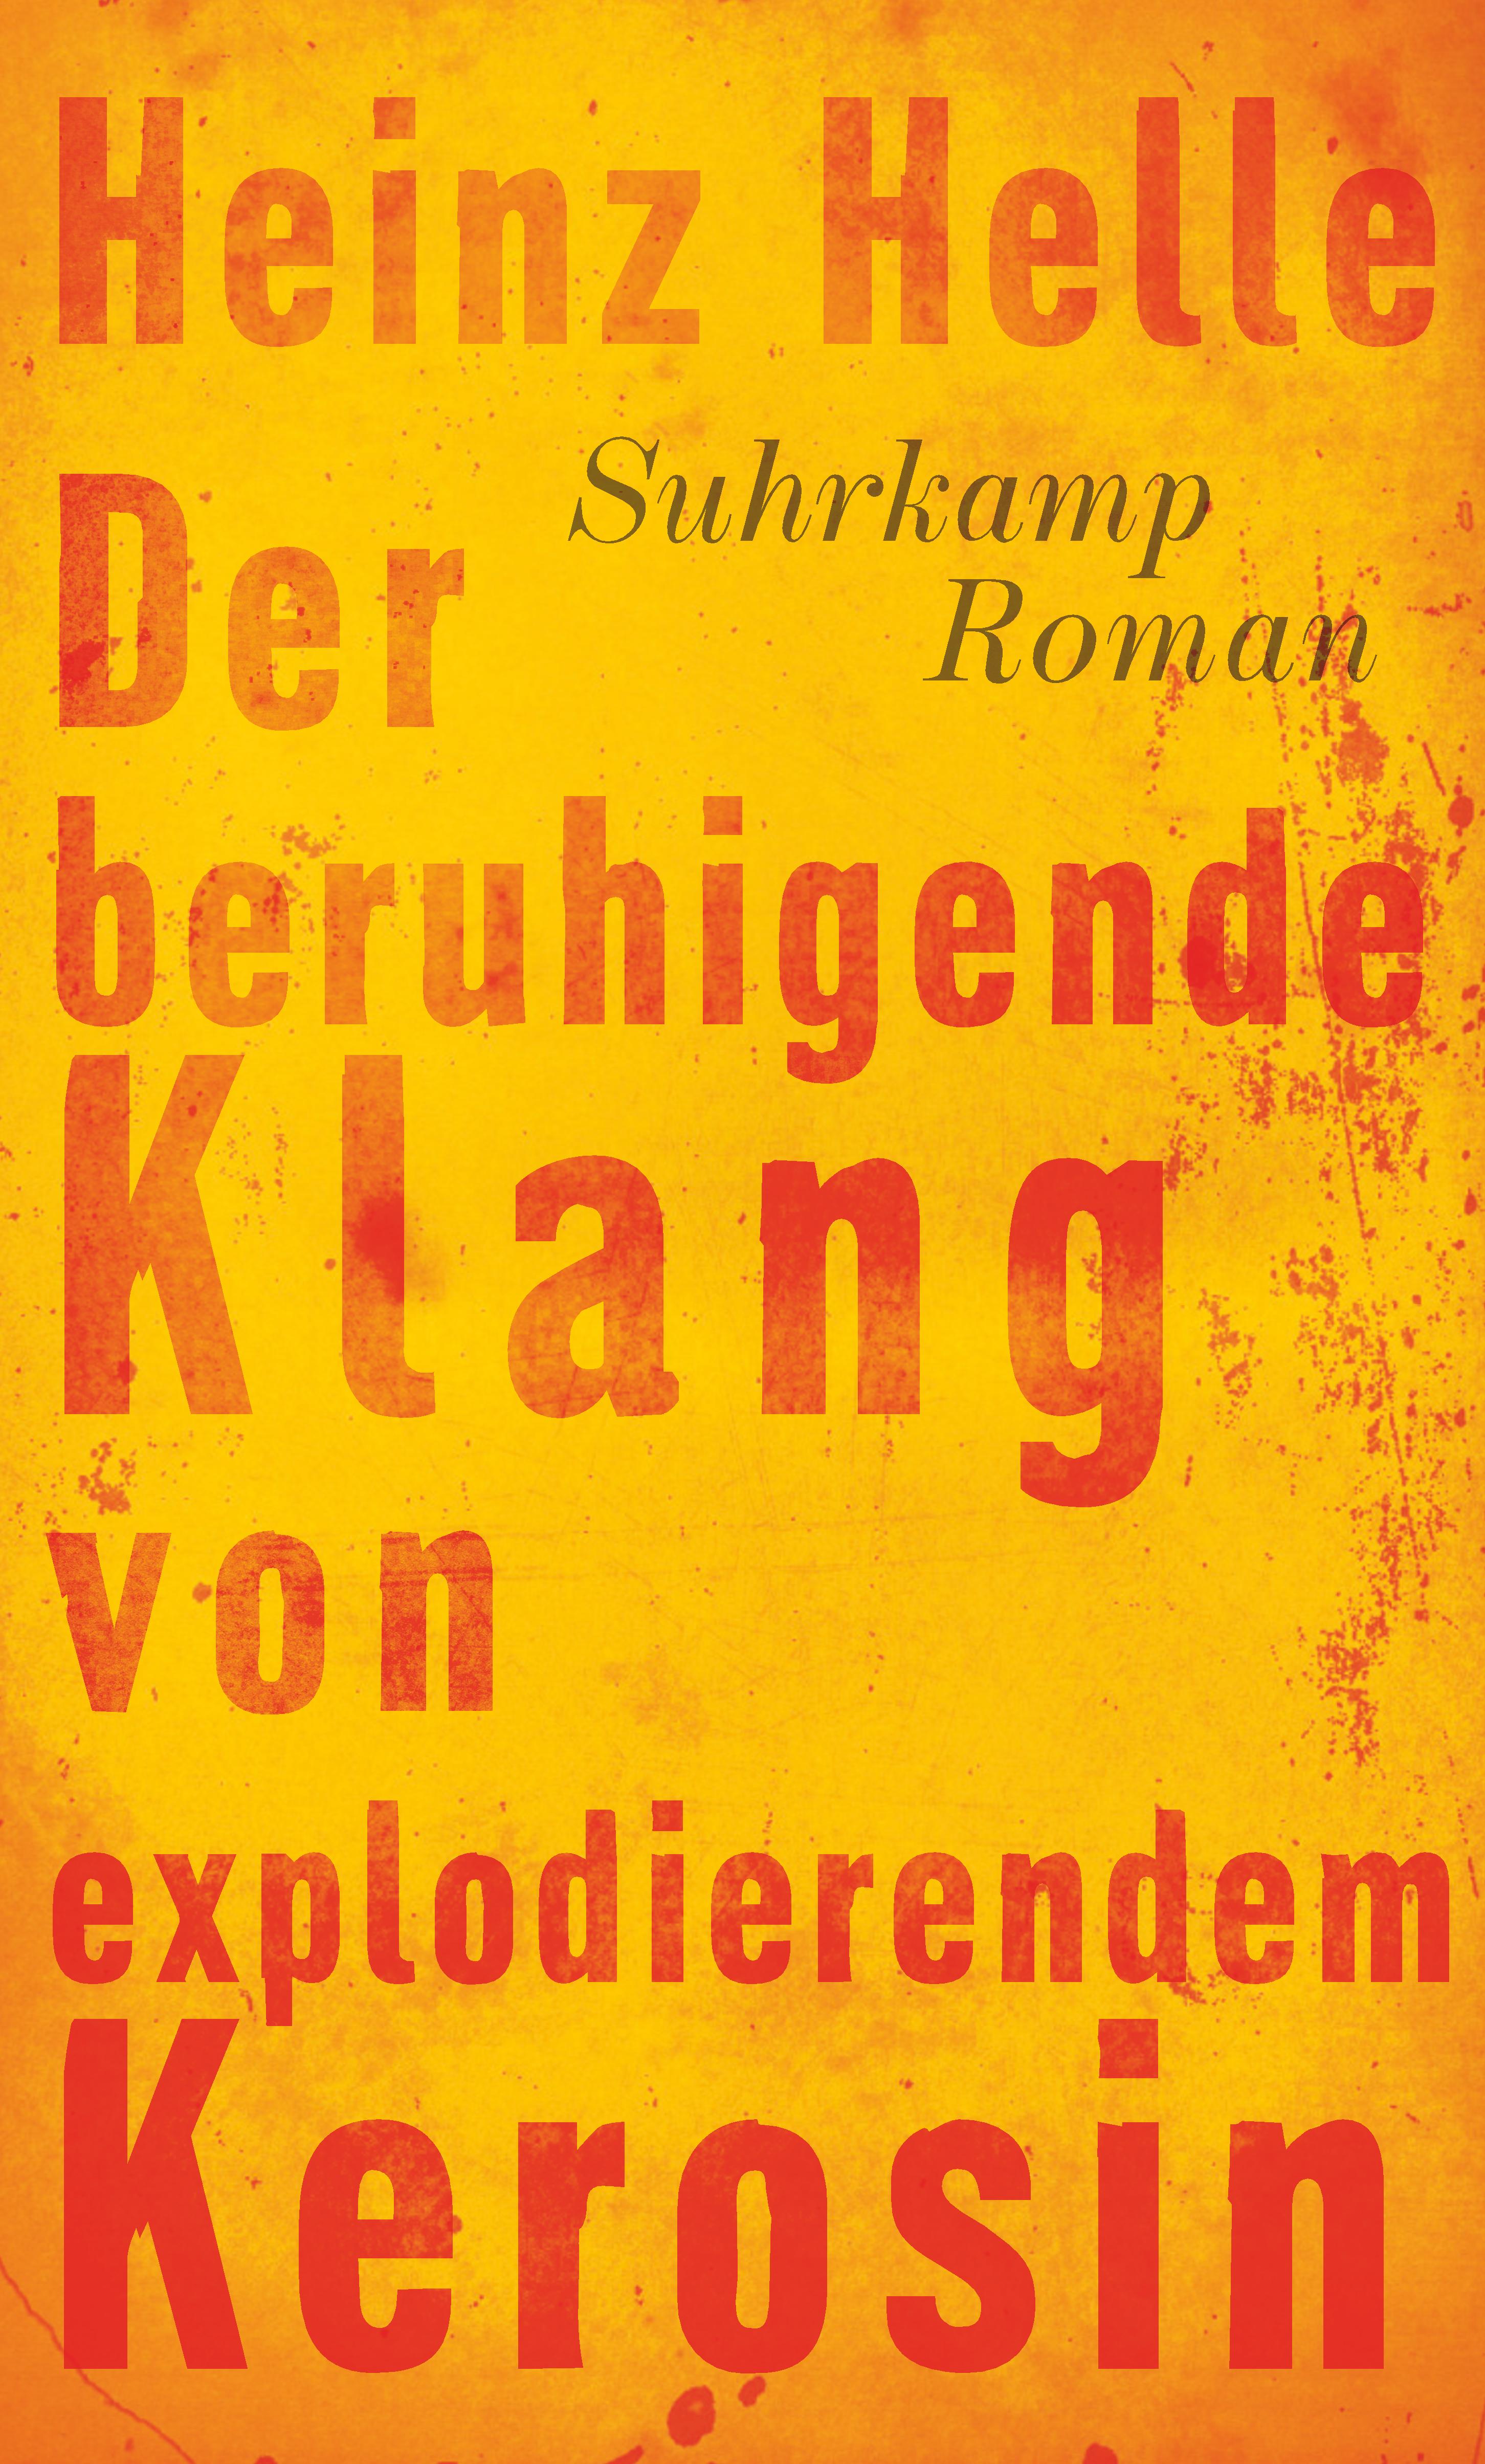 Der beruhigende Klang von explodierendem Kerosin. Buch von Heinz Helle  (Suhrkamp Verlag)